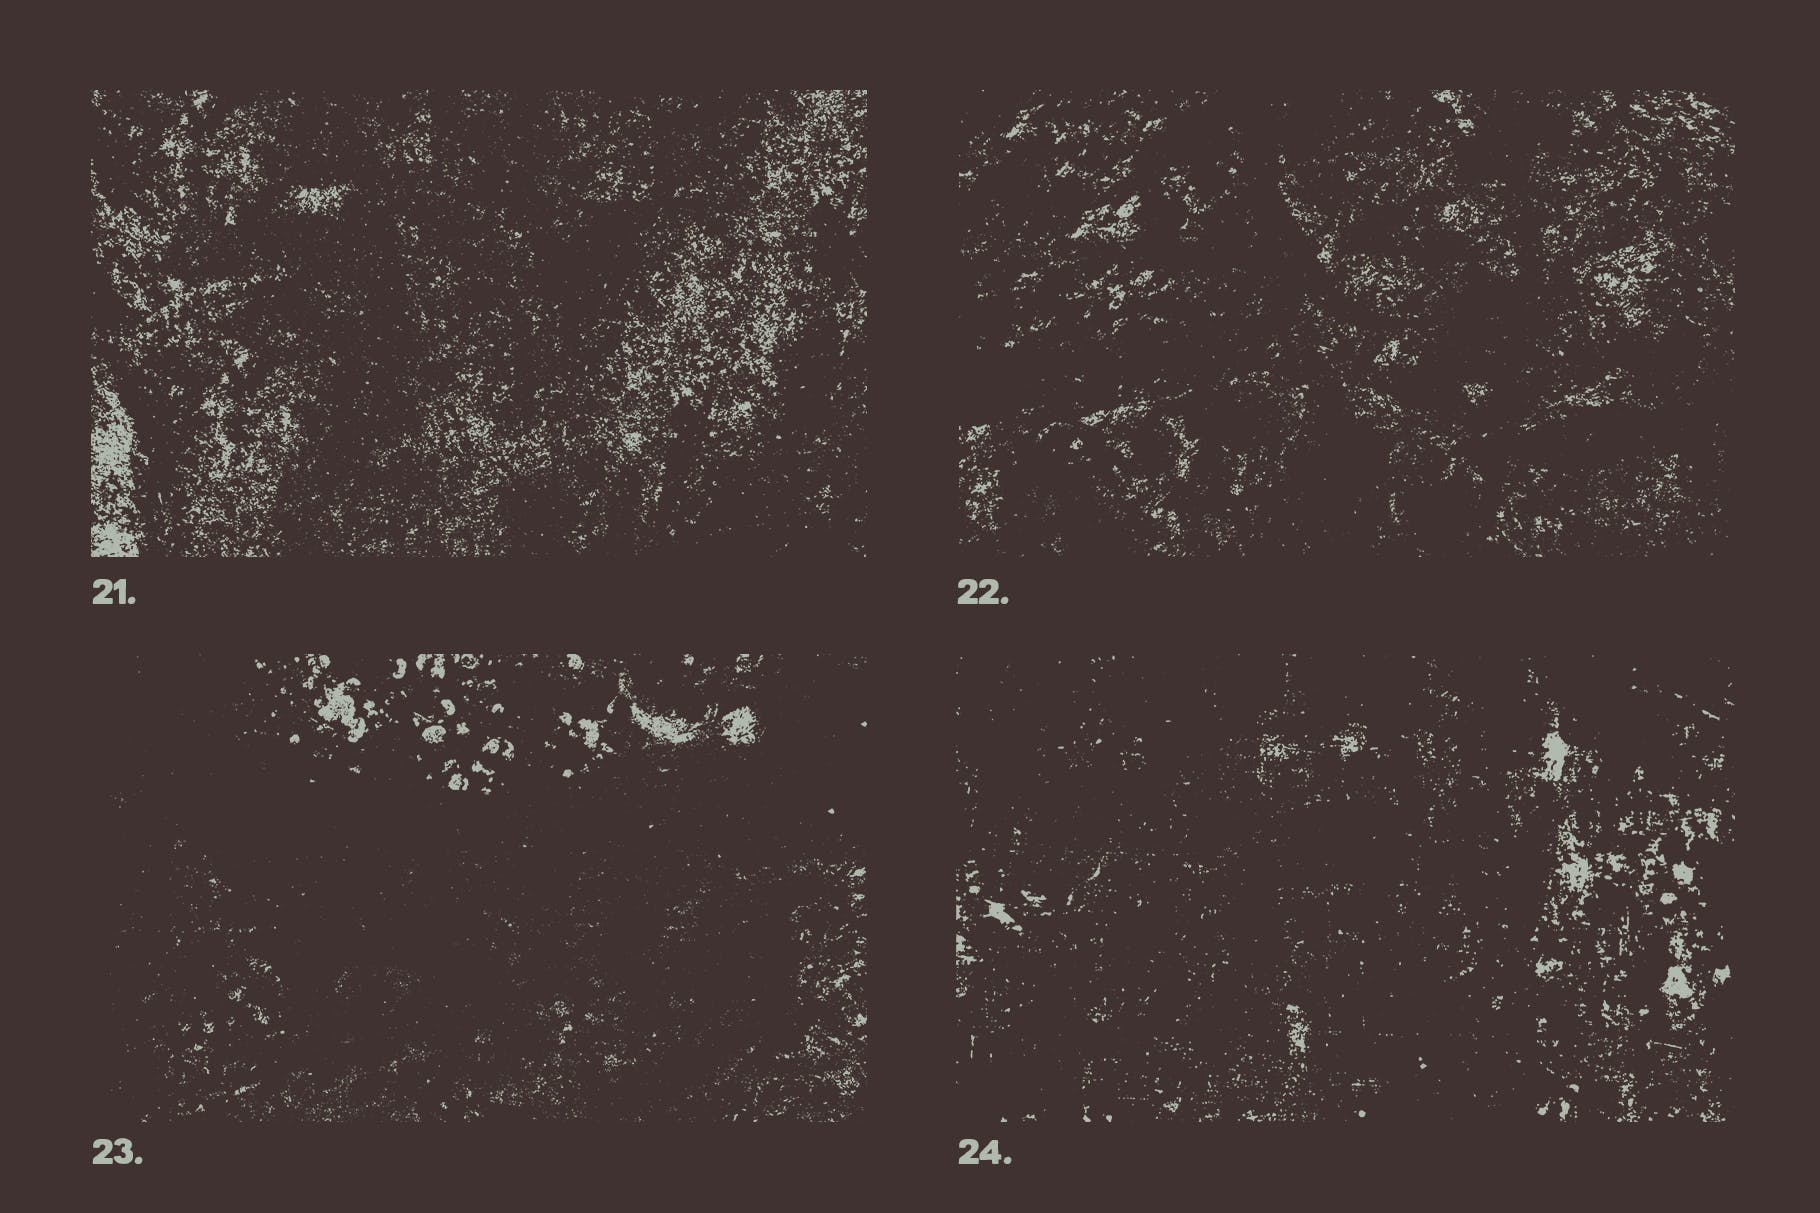 12个污迹斑迹做旧处理矢量纹理背景素材 Vector Grunge Textures x12 Vol2插图(1)